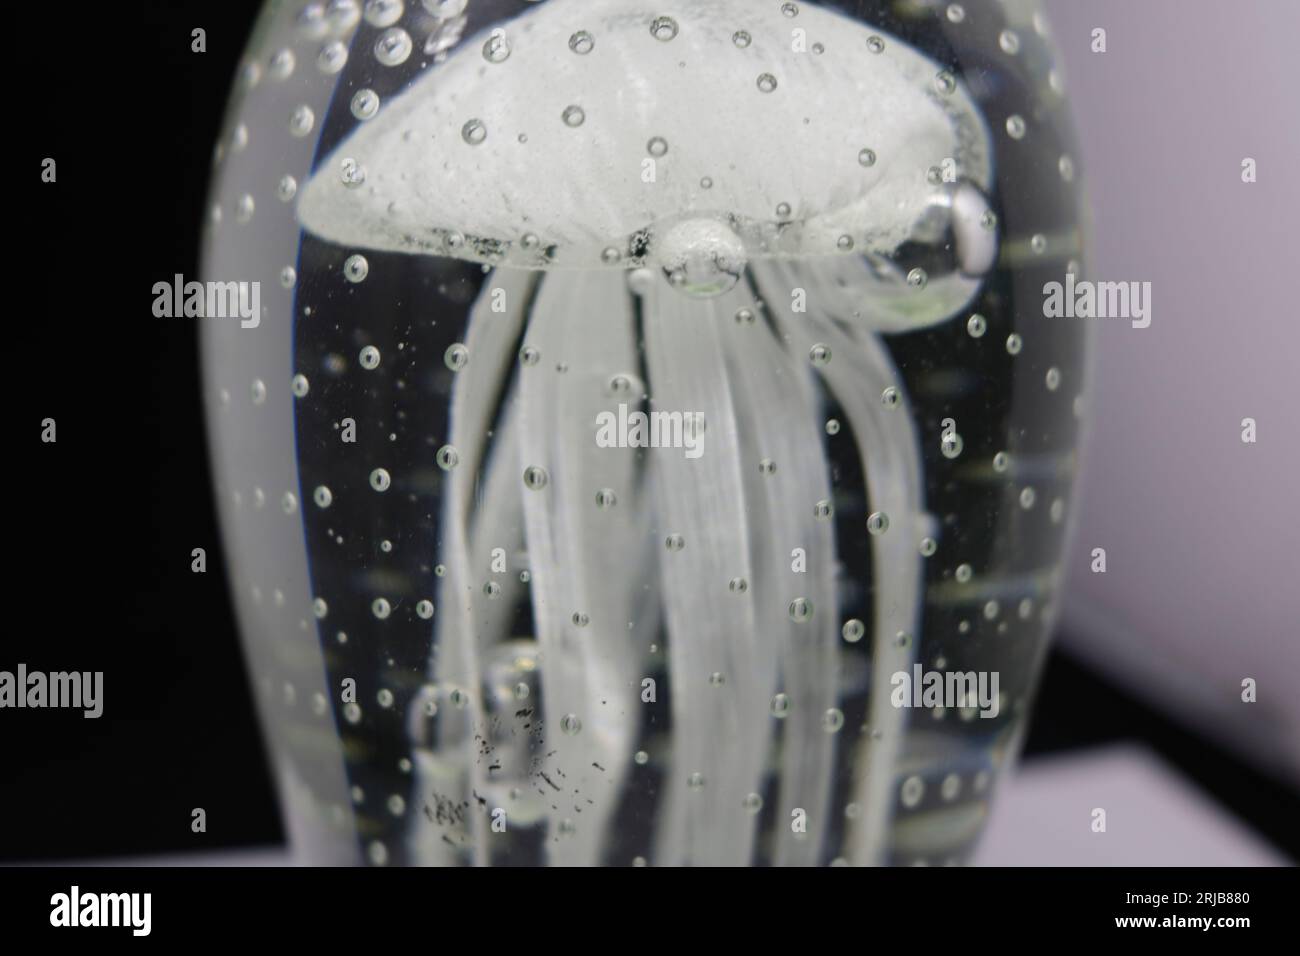 Une gelée transparente dans un récipient transparent avec des bulles sur le fond noir Banque D'Images